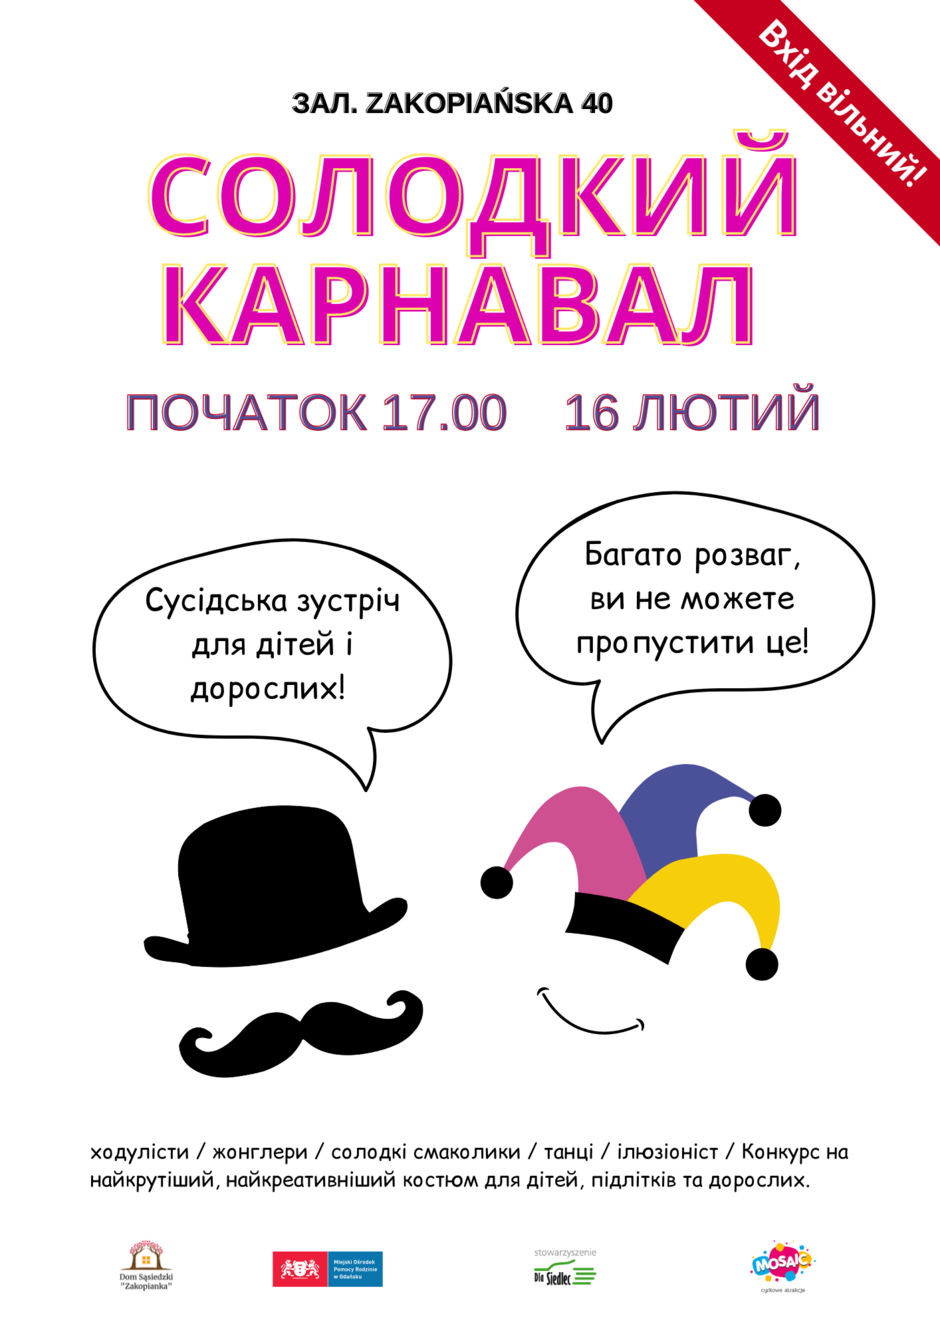 Plakat karnawału w Zakopiance, wersja ukraińska - źródło organizatorzy imprezy